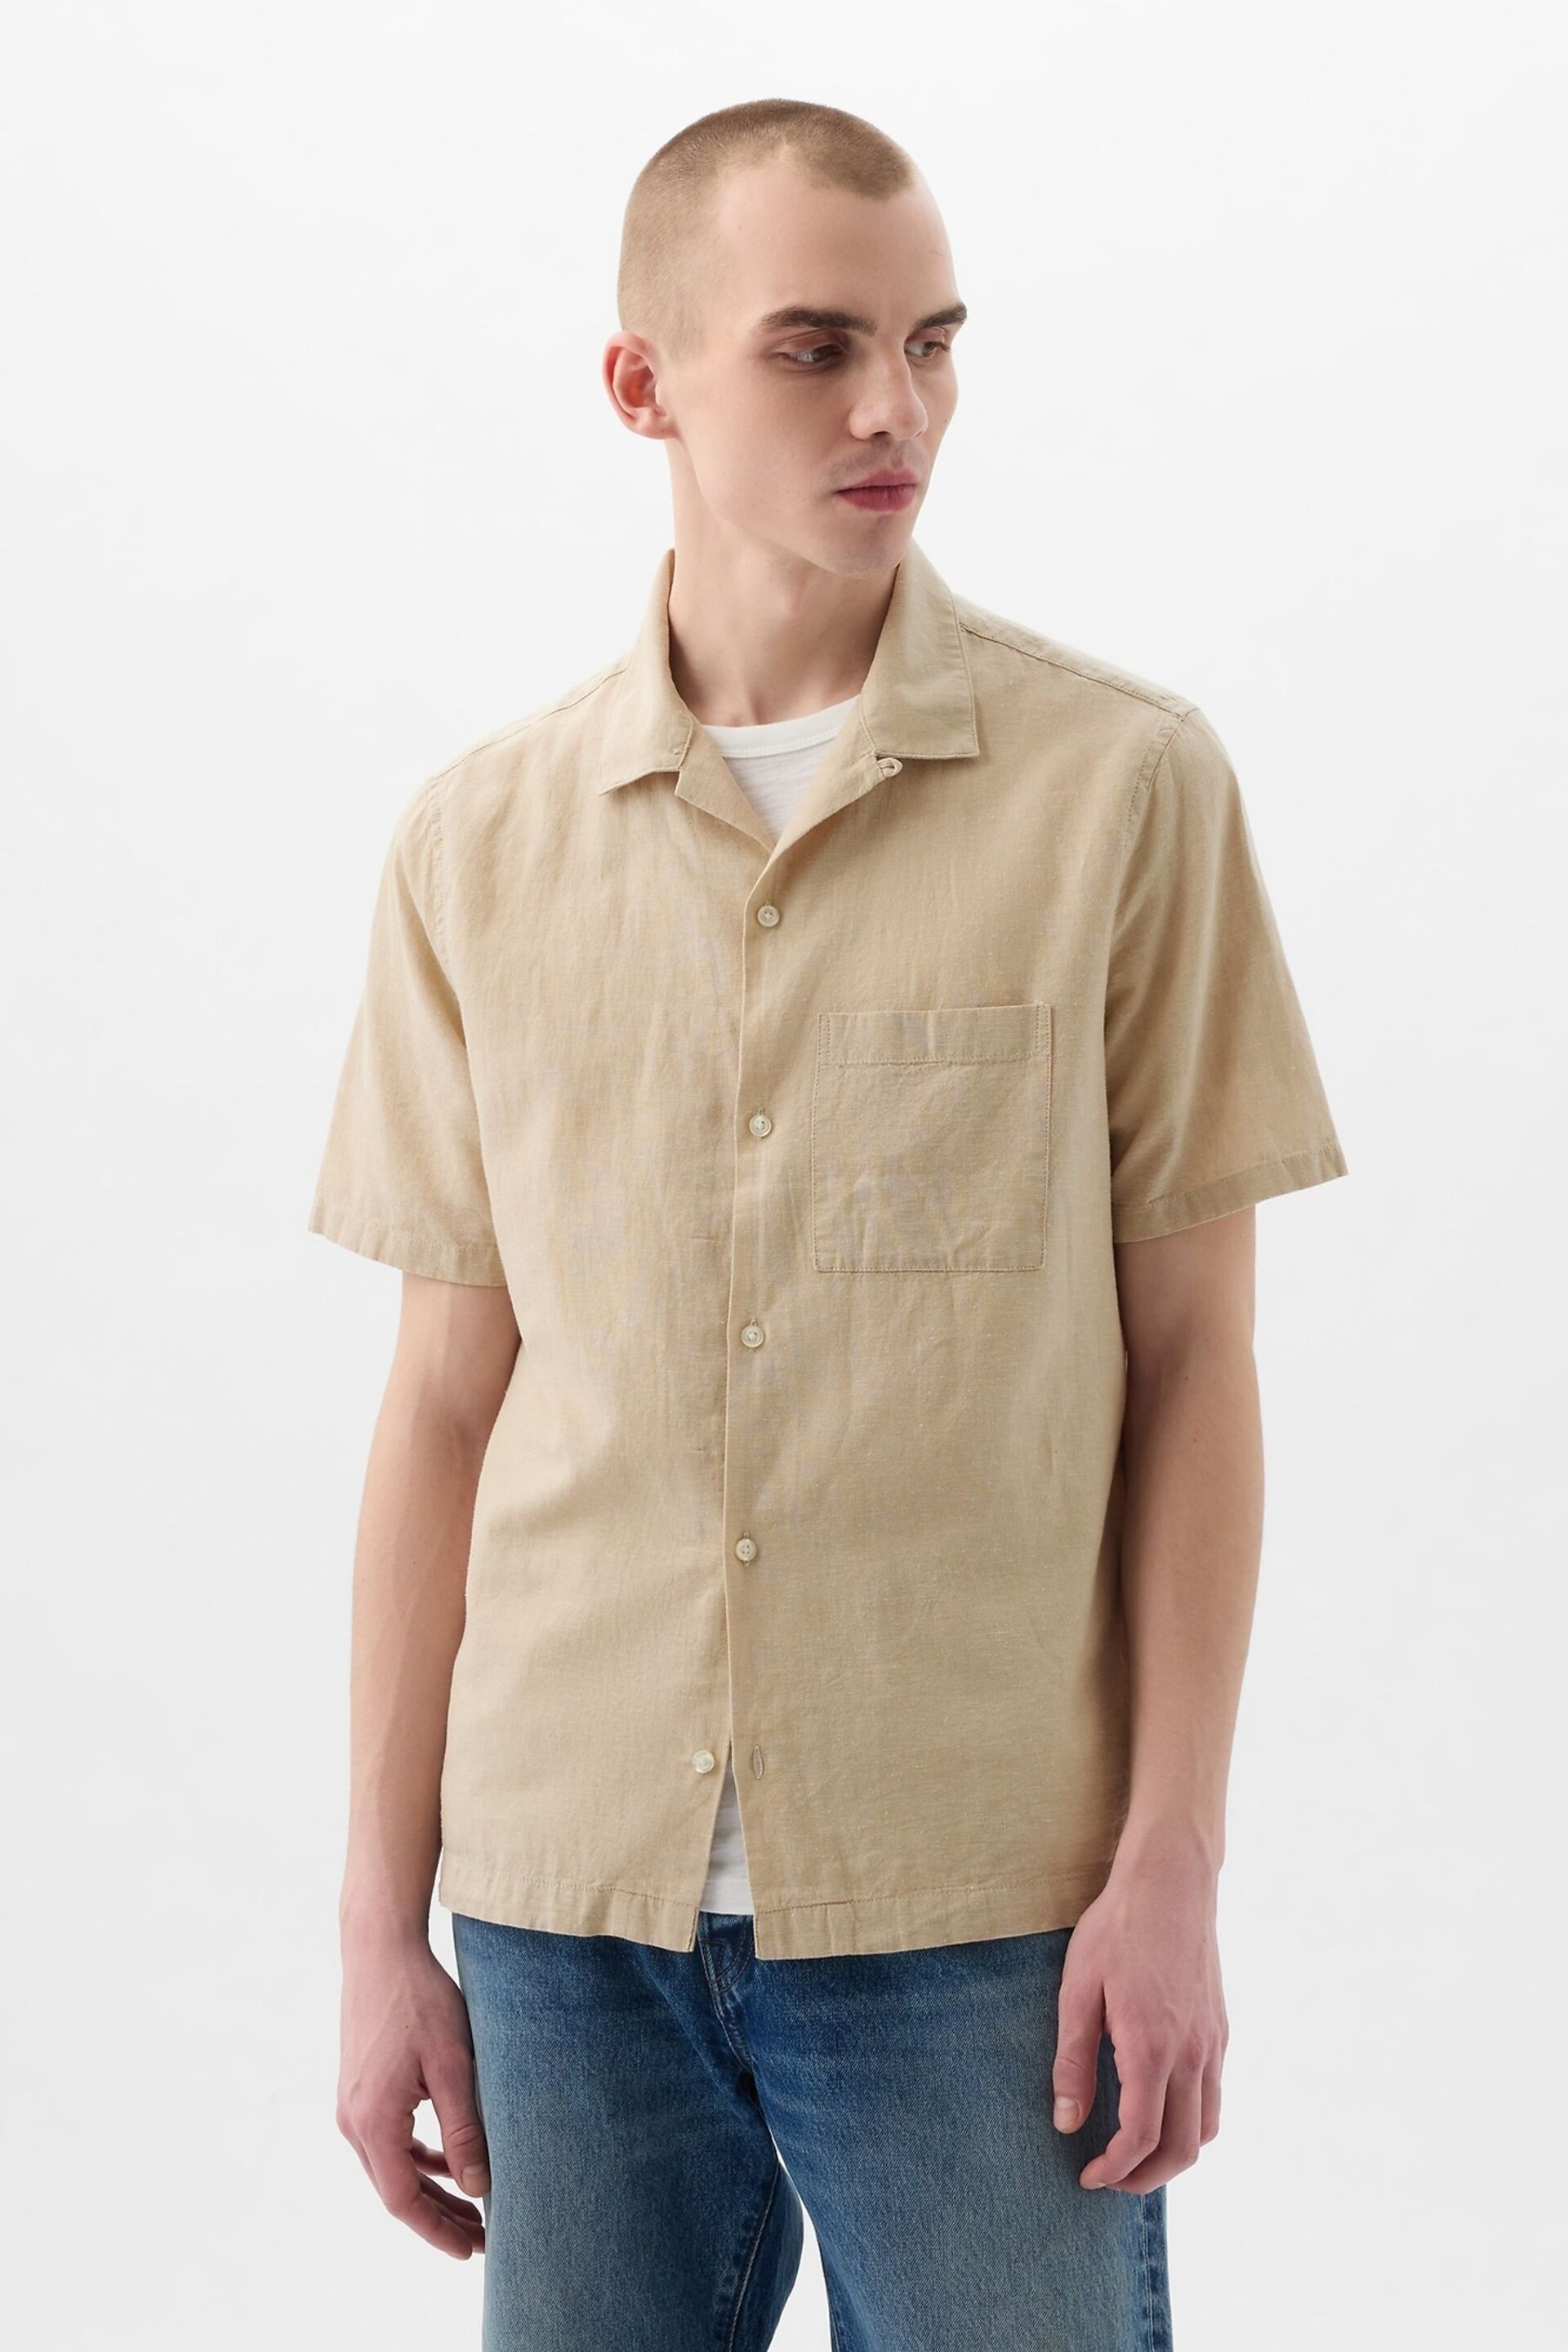 Gap Neutral Linen Cotton Short Sleeve Shirt - Image 1 of 4